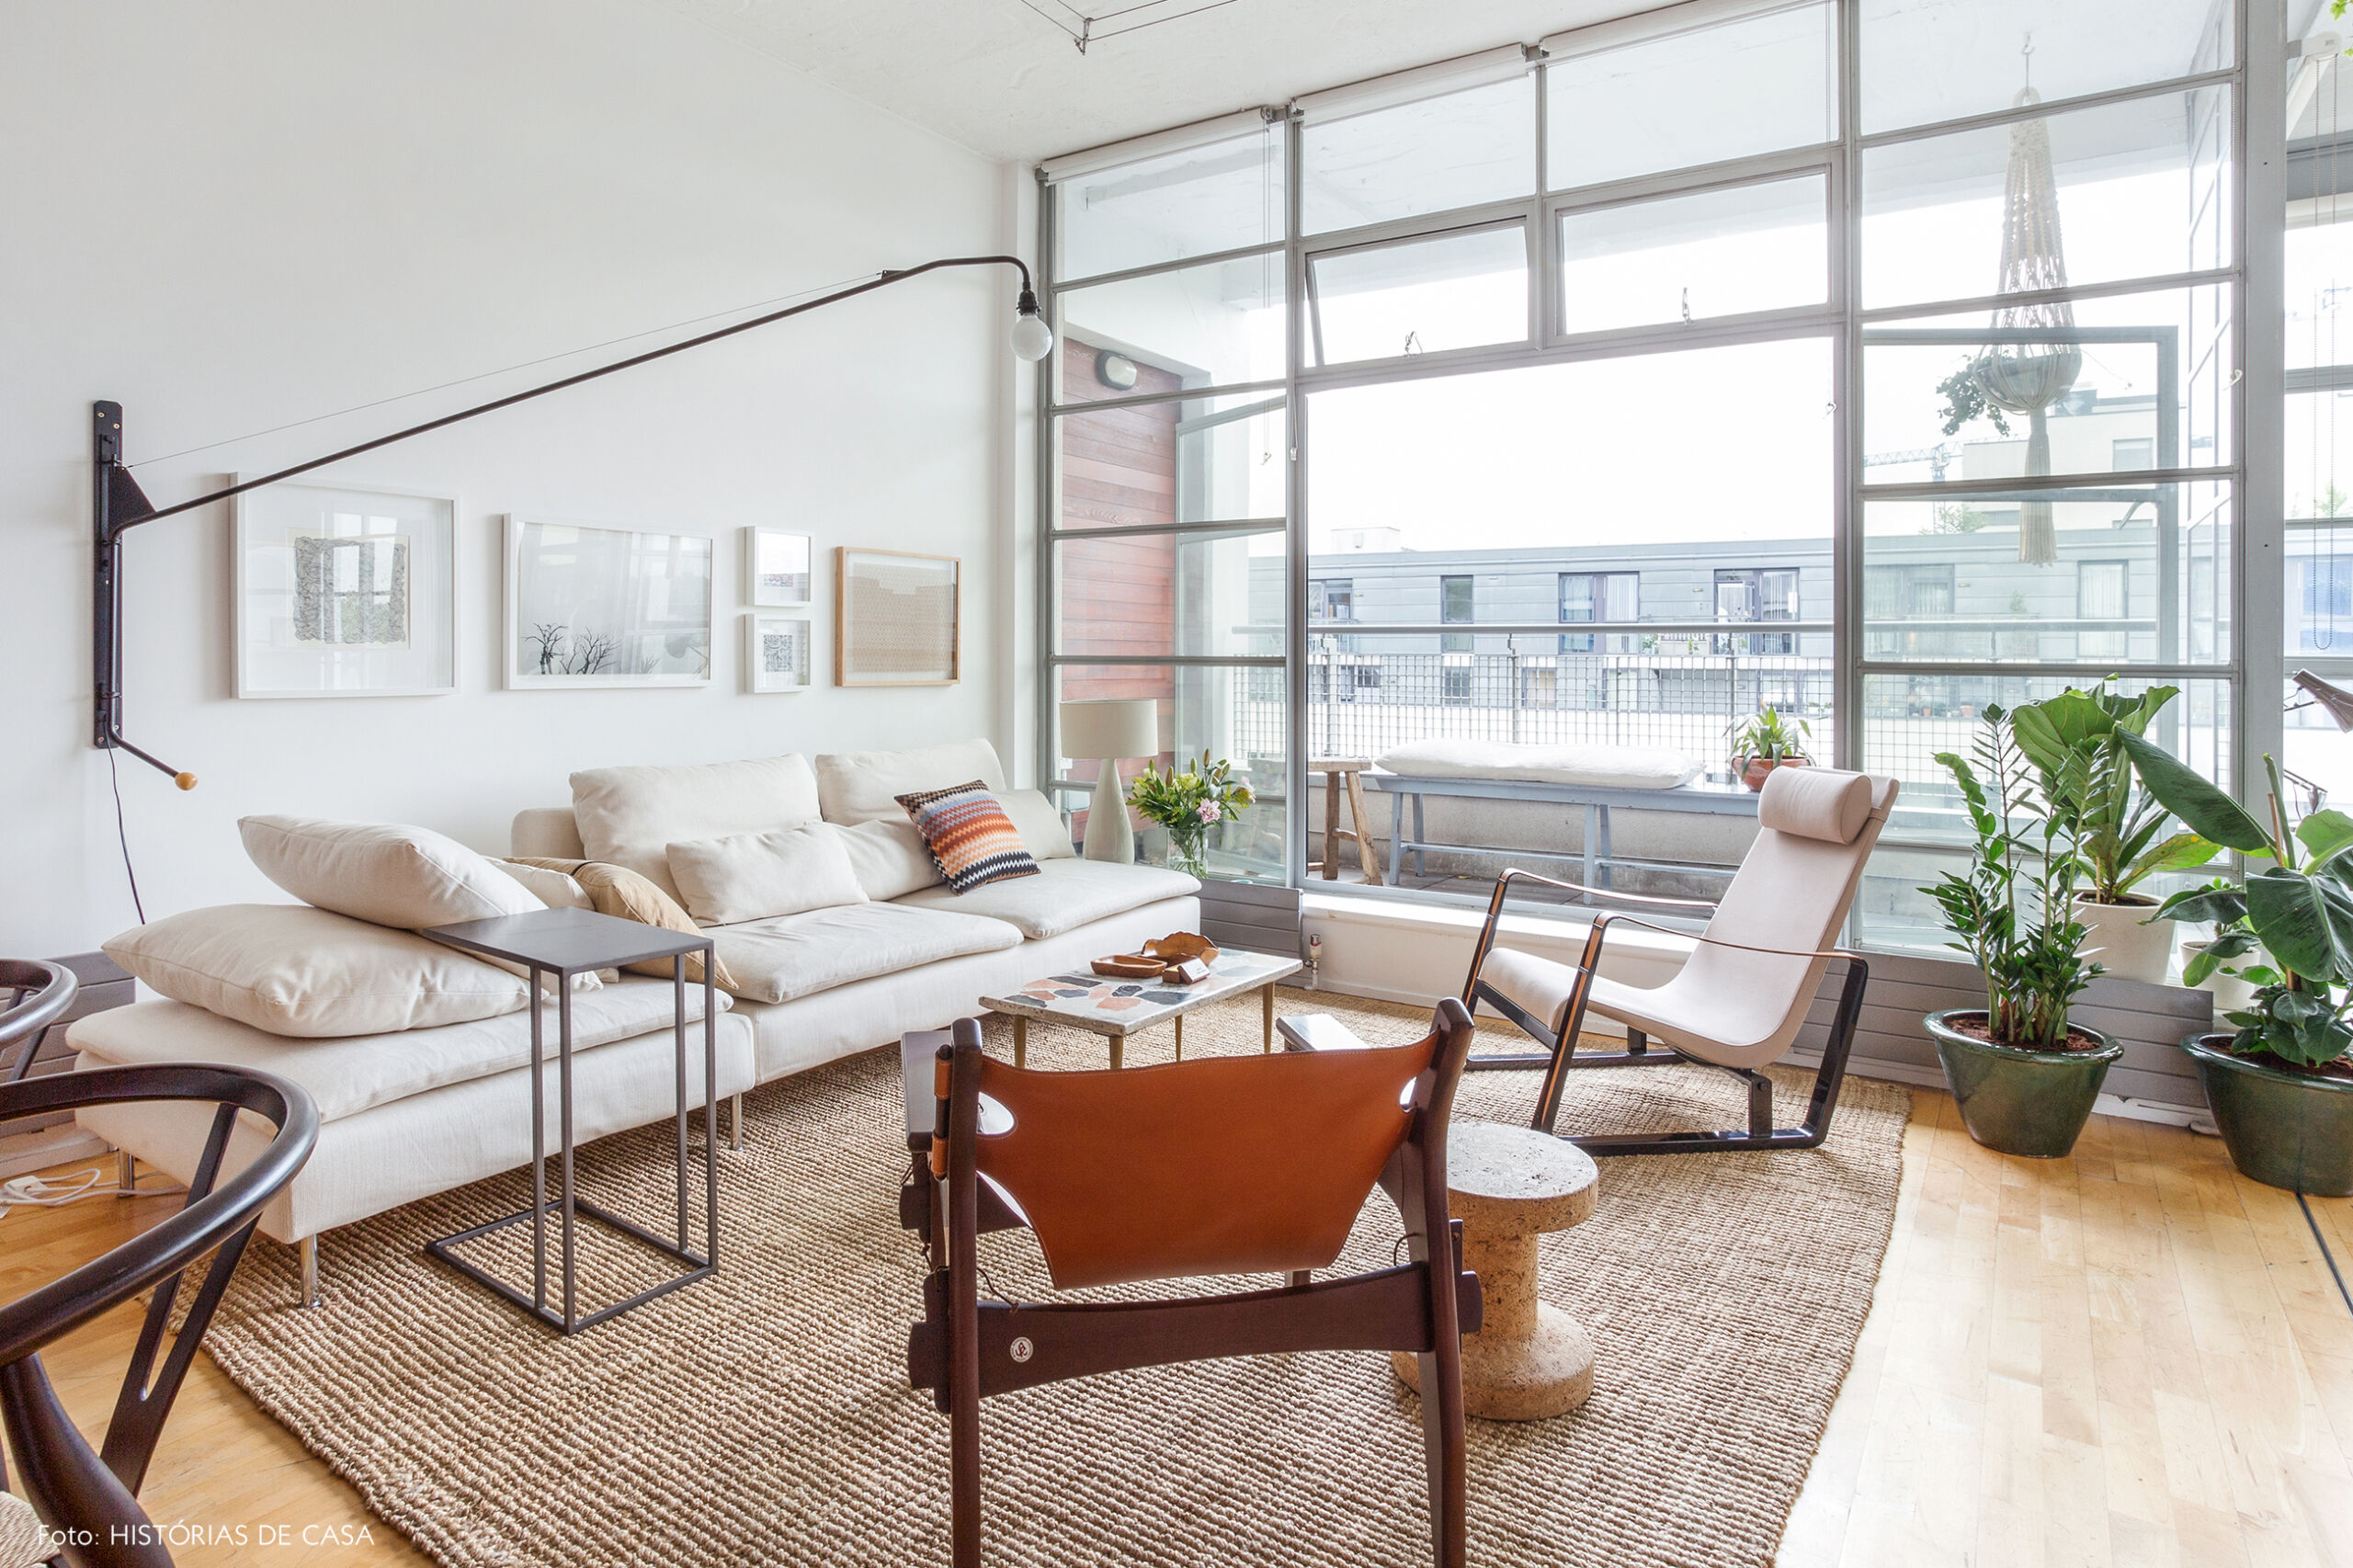 Apartamento com sala integrada e varanda envidraçada, London apartment with contemporary design